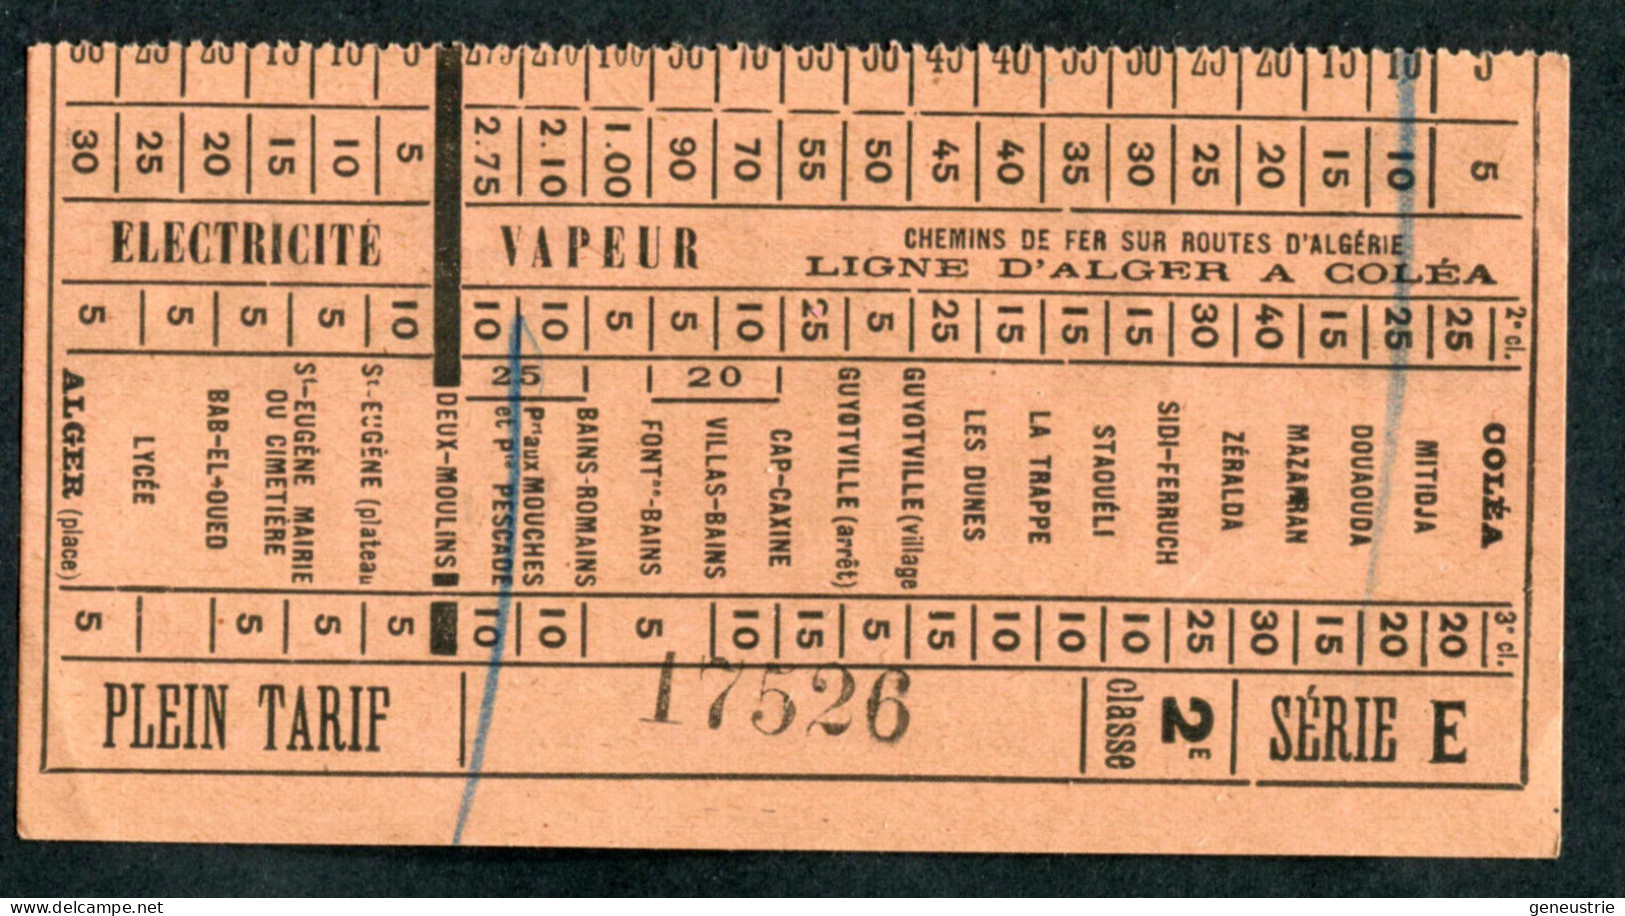 Ticket Tramway Alger Vers 1900 "Chemin De Fer Sur Route D'Algerie" Billet Chemin De Fer - Pub Byrrh - World